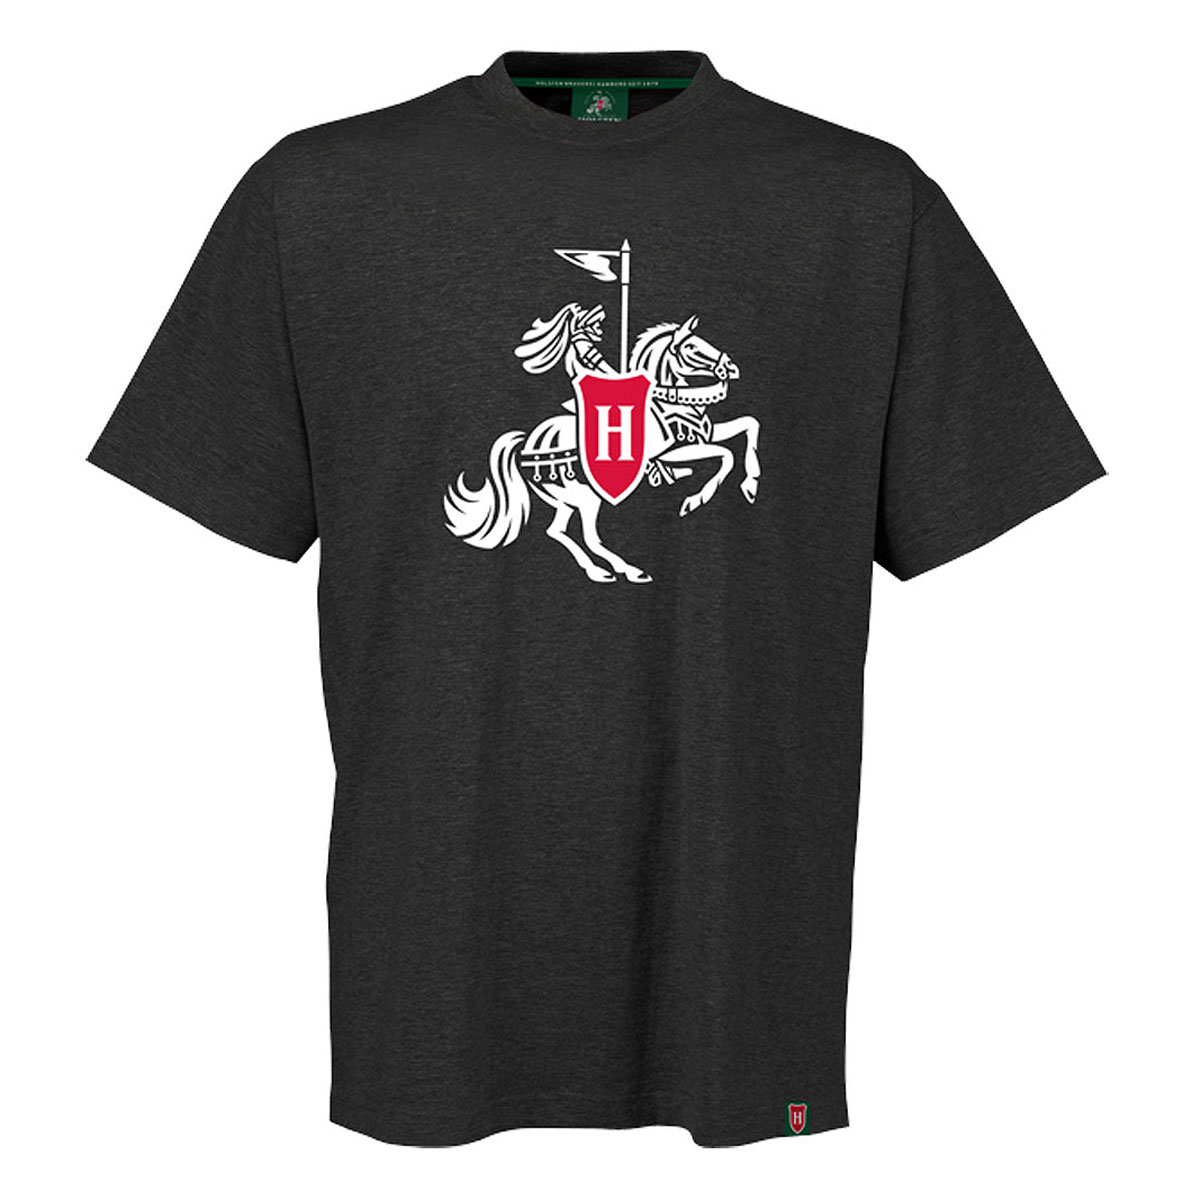 Herren-T-Shirt, anthrazit-meliert „Ritter groß“